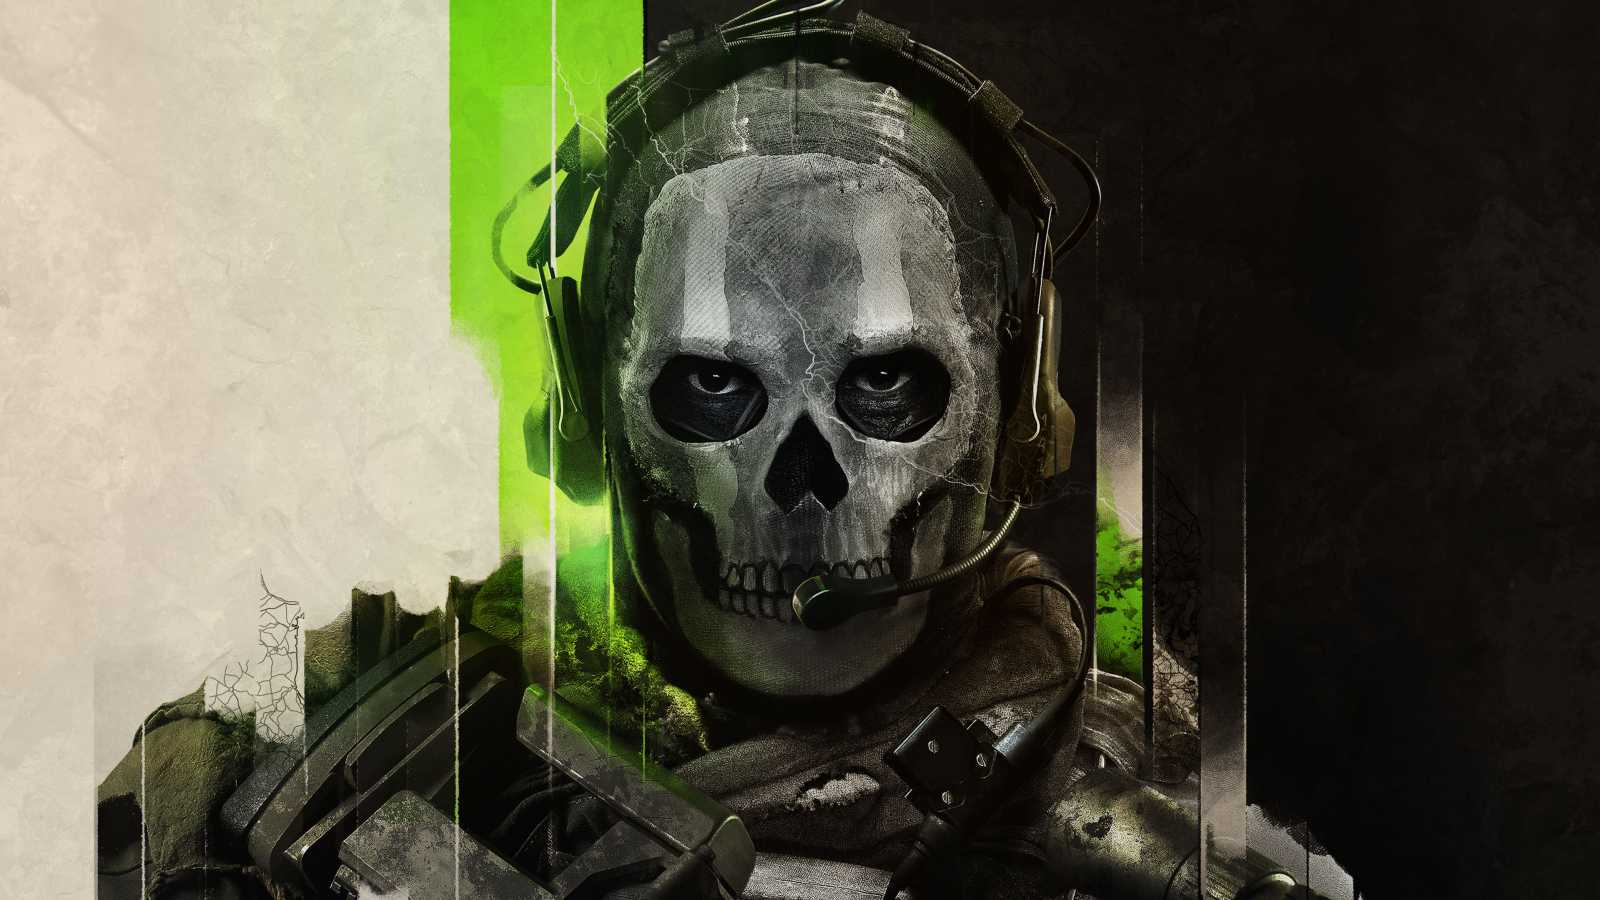 Recenze příběhové kampaně Call of Duty: Modern Warfare 2 - Infinity Ward to opět dokázali